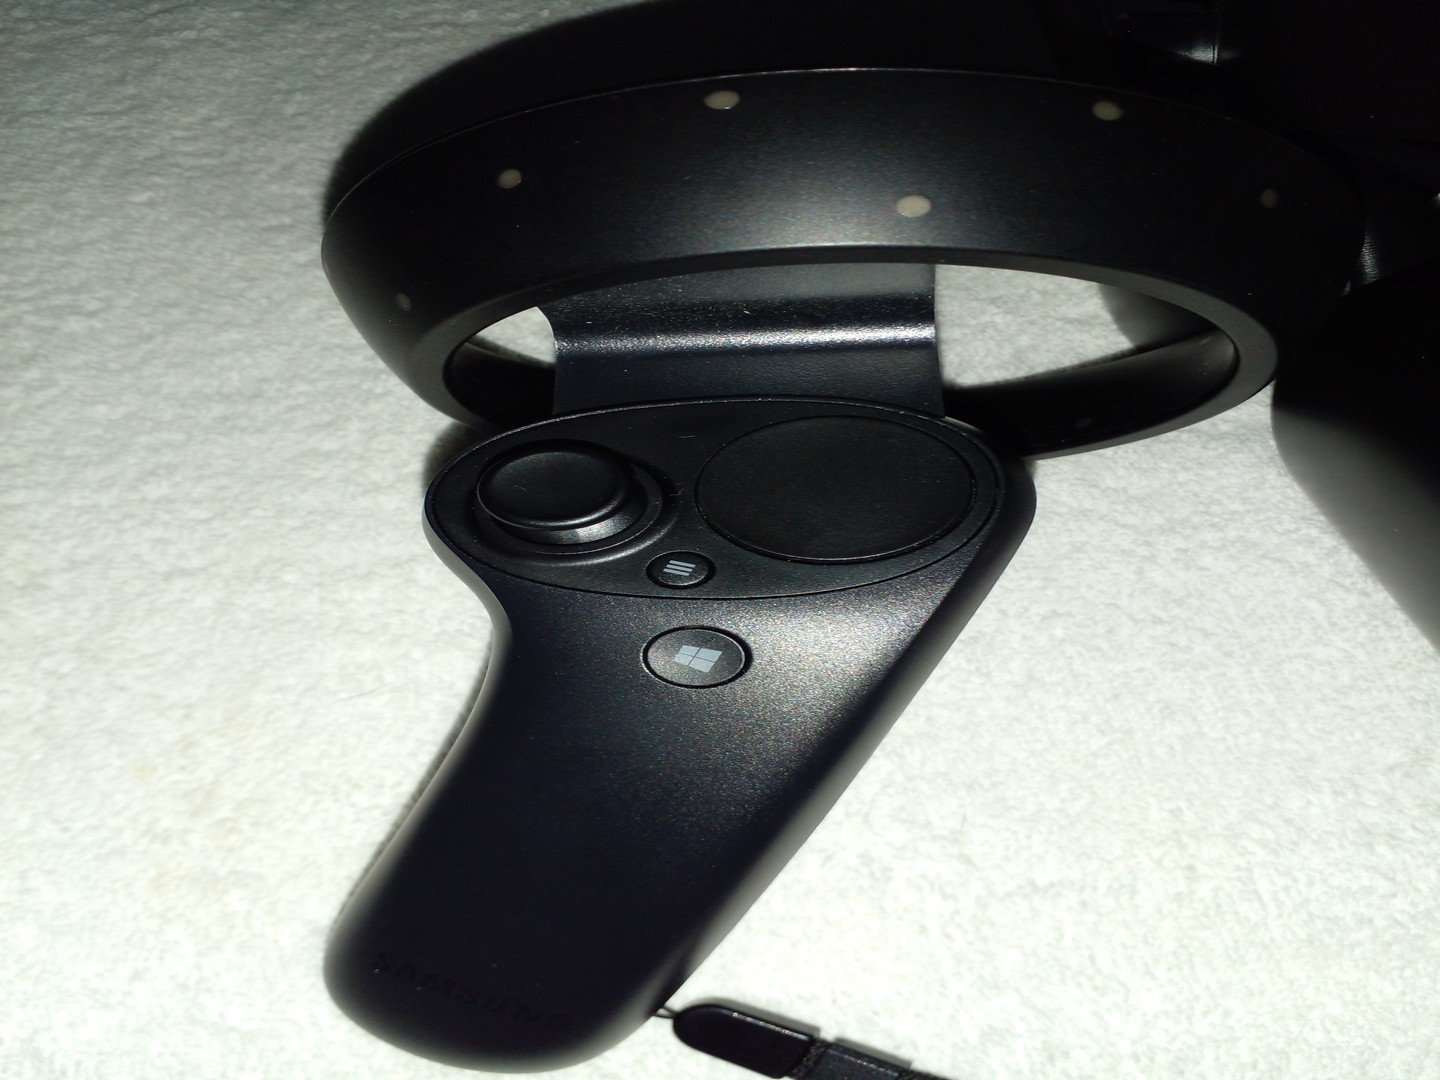 consolas y videojuegos - Casco De Realidad Virtual (VR HeadSet) Samsung odyssey+ 5